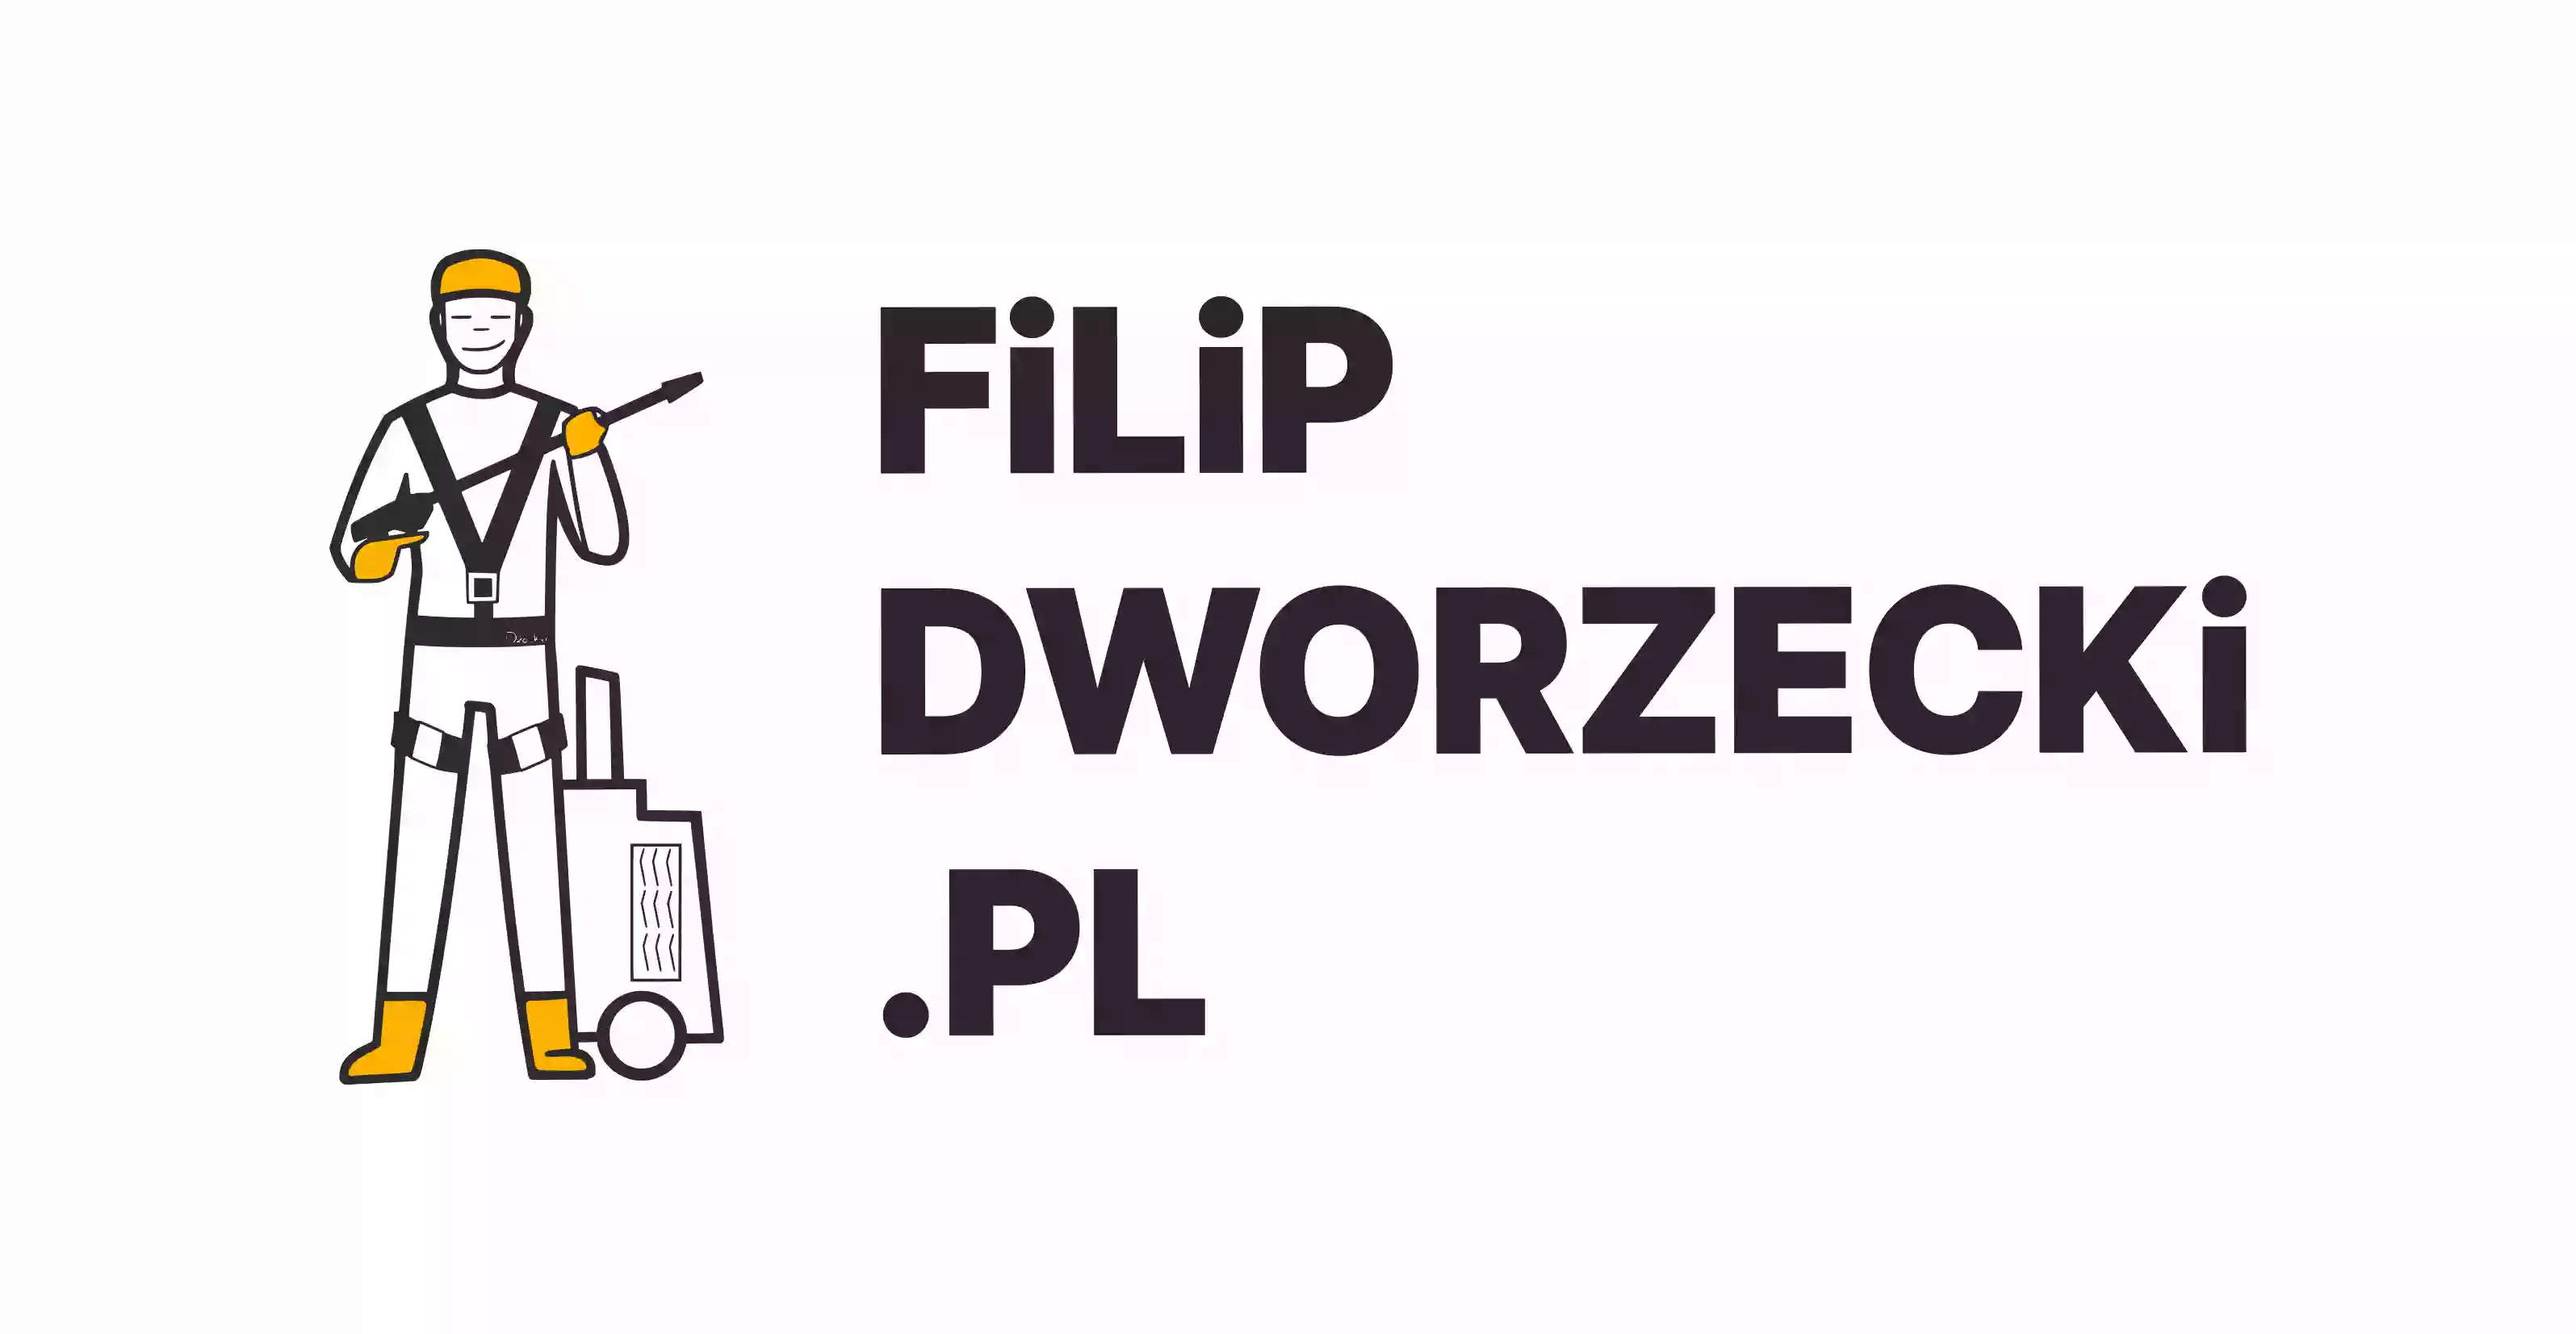 Filip Dworzecki .pl mycie ciśnieniowe, prace wysokościowe, wycinka drzew, odśnieżanie, czyszczenie silosów